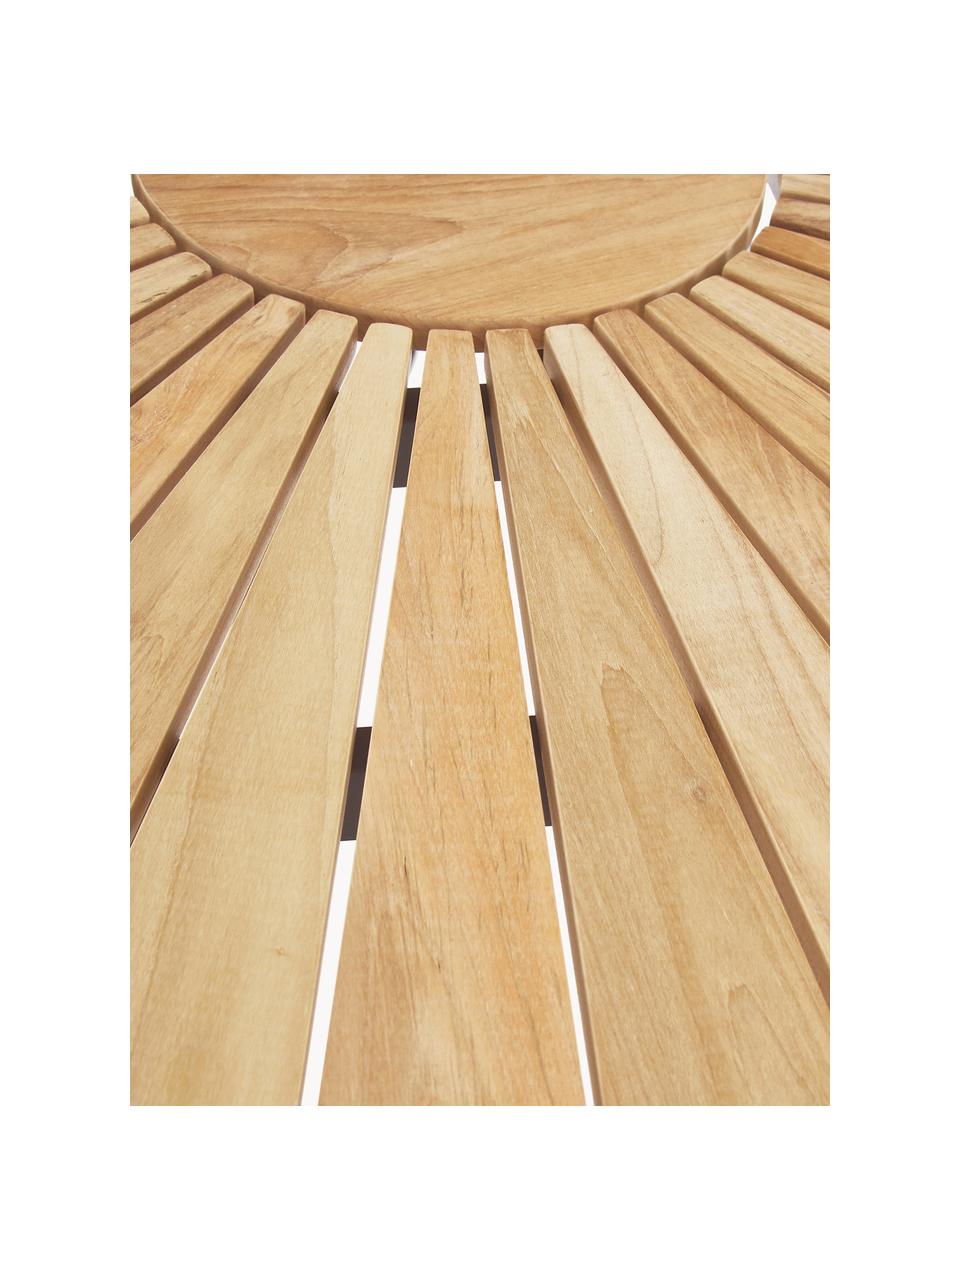 Kulatý zahradní stůl z teakového dřeva Hard & Ellen, různé velikosti, Teakové dřevo, antracitová, Ø 110 cm, V 73 cm